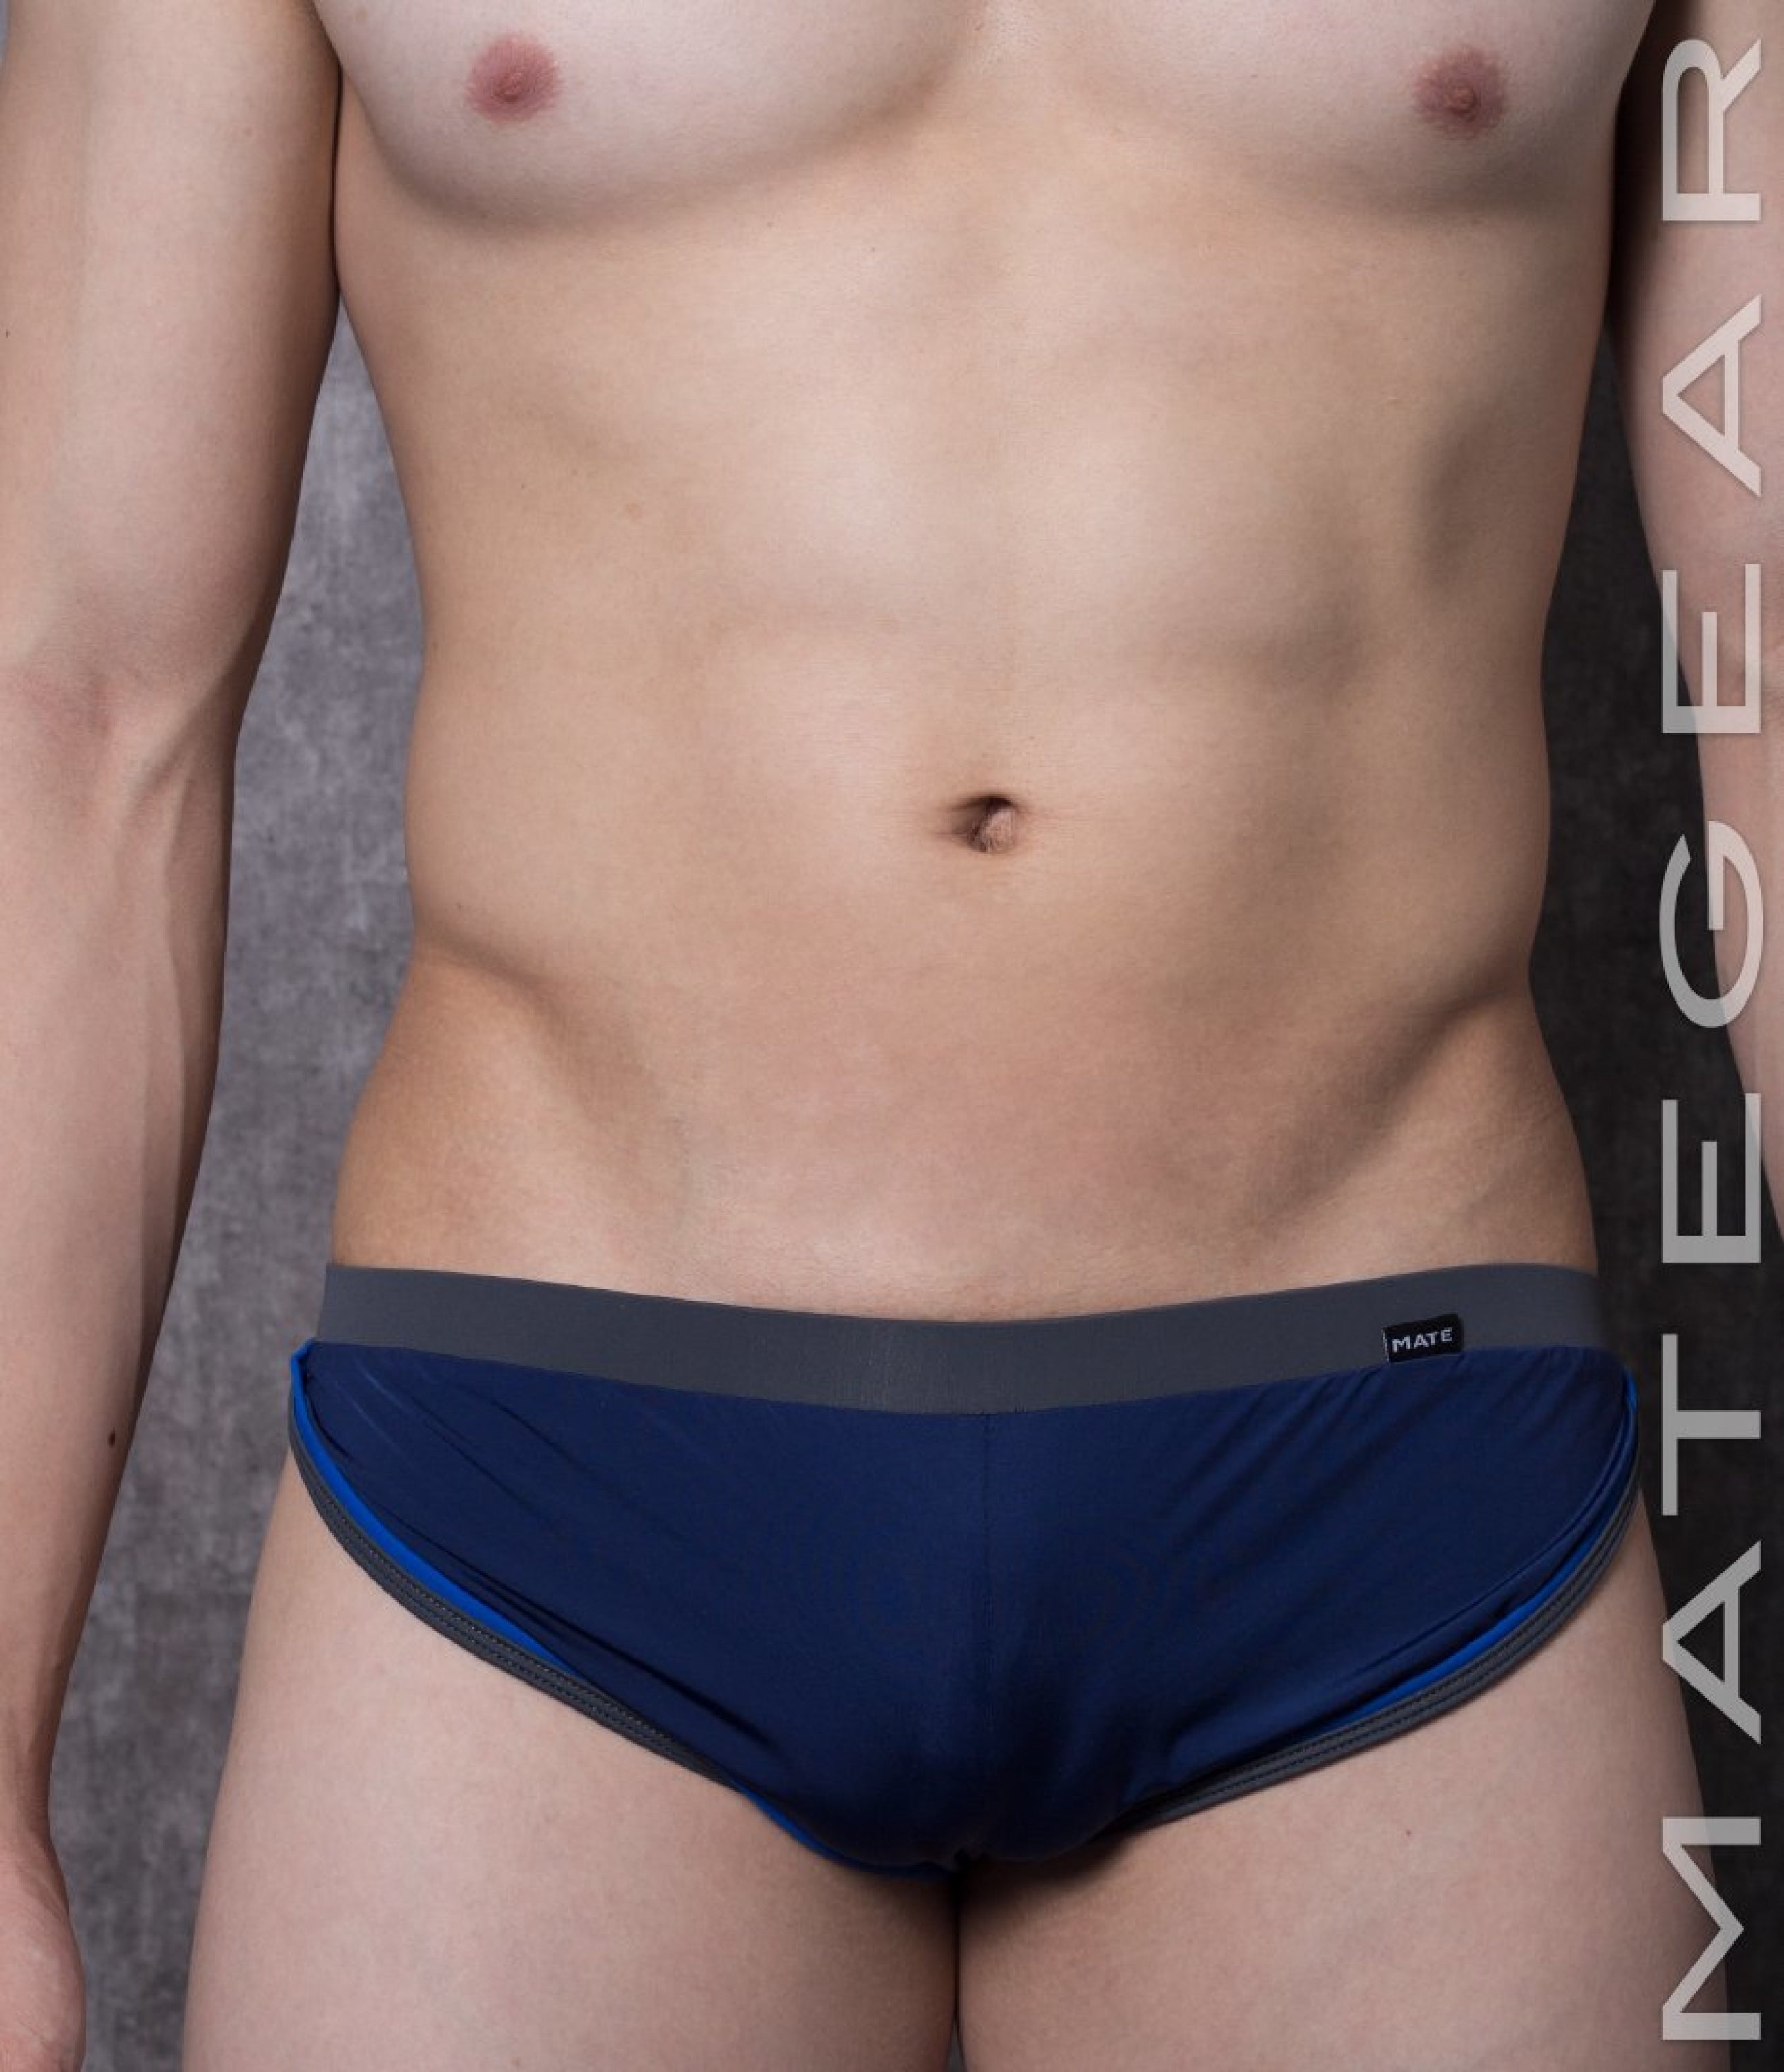 Sexy Men's Loungewear Xpression Mini Shorts - Du Mi (Open Back) - MATEGEAR - Sexy Men's Swimwear, Underwear, Sportswear and Loungewear